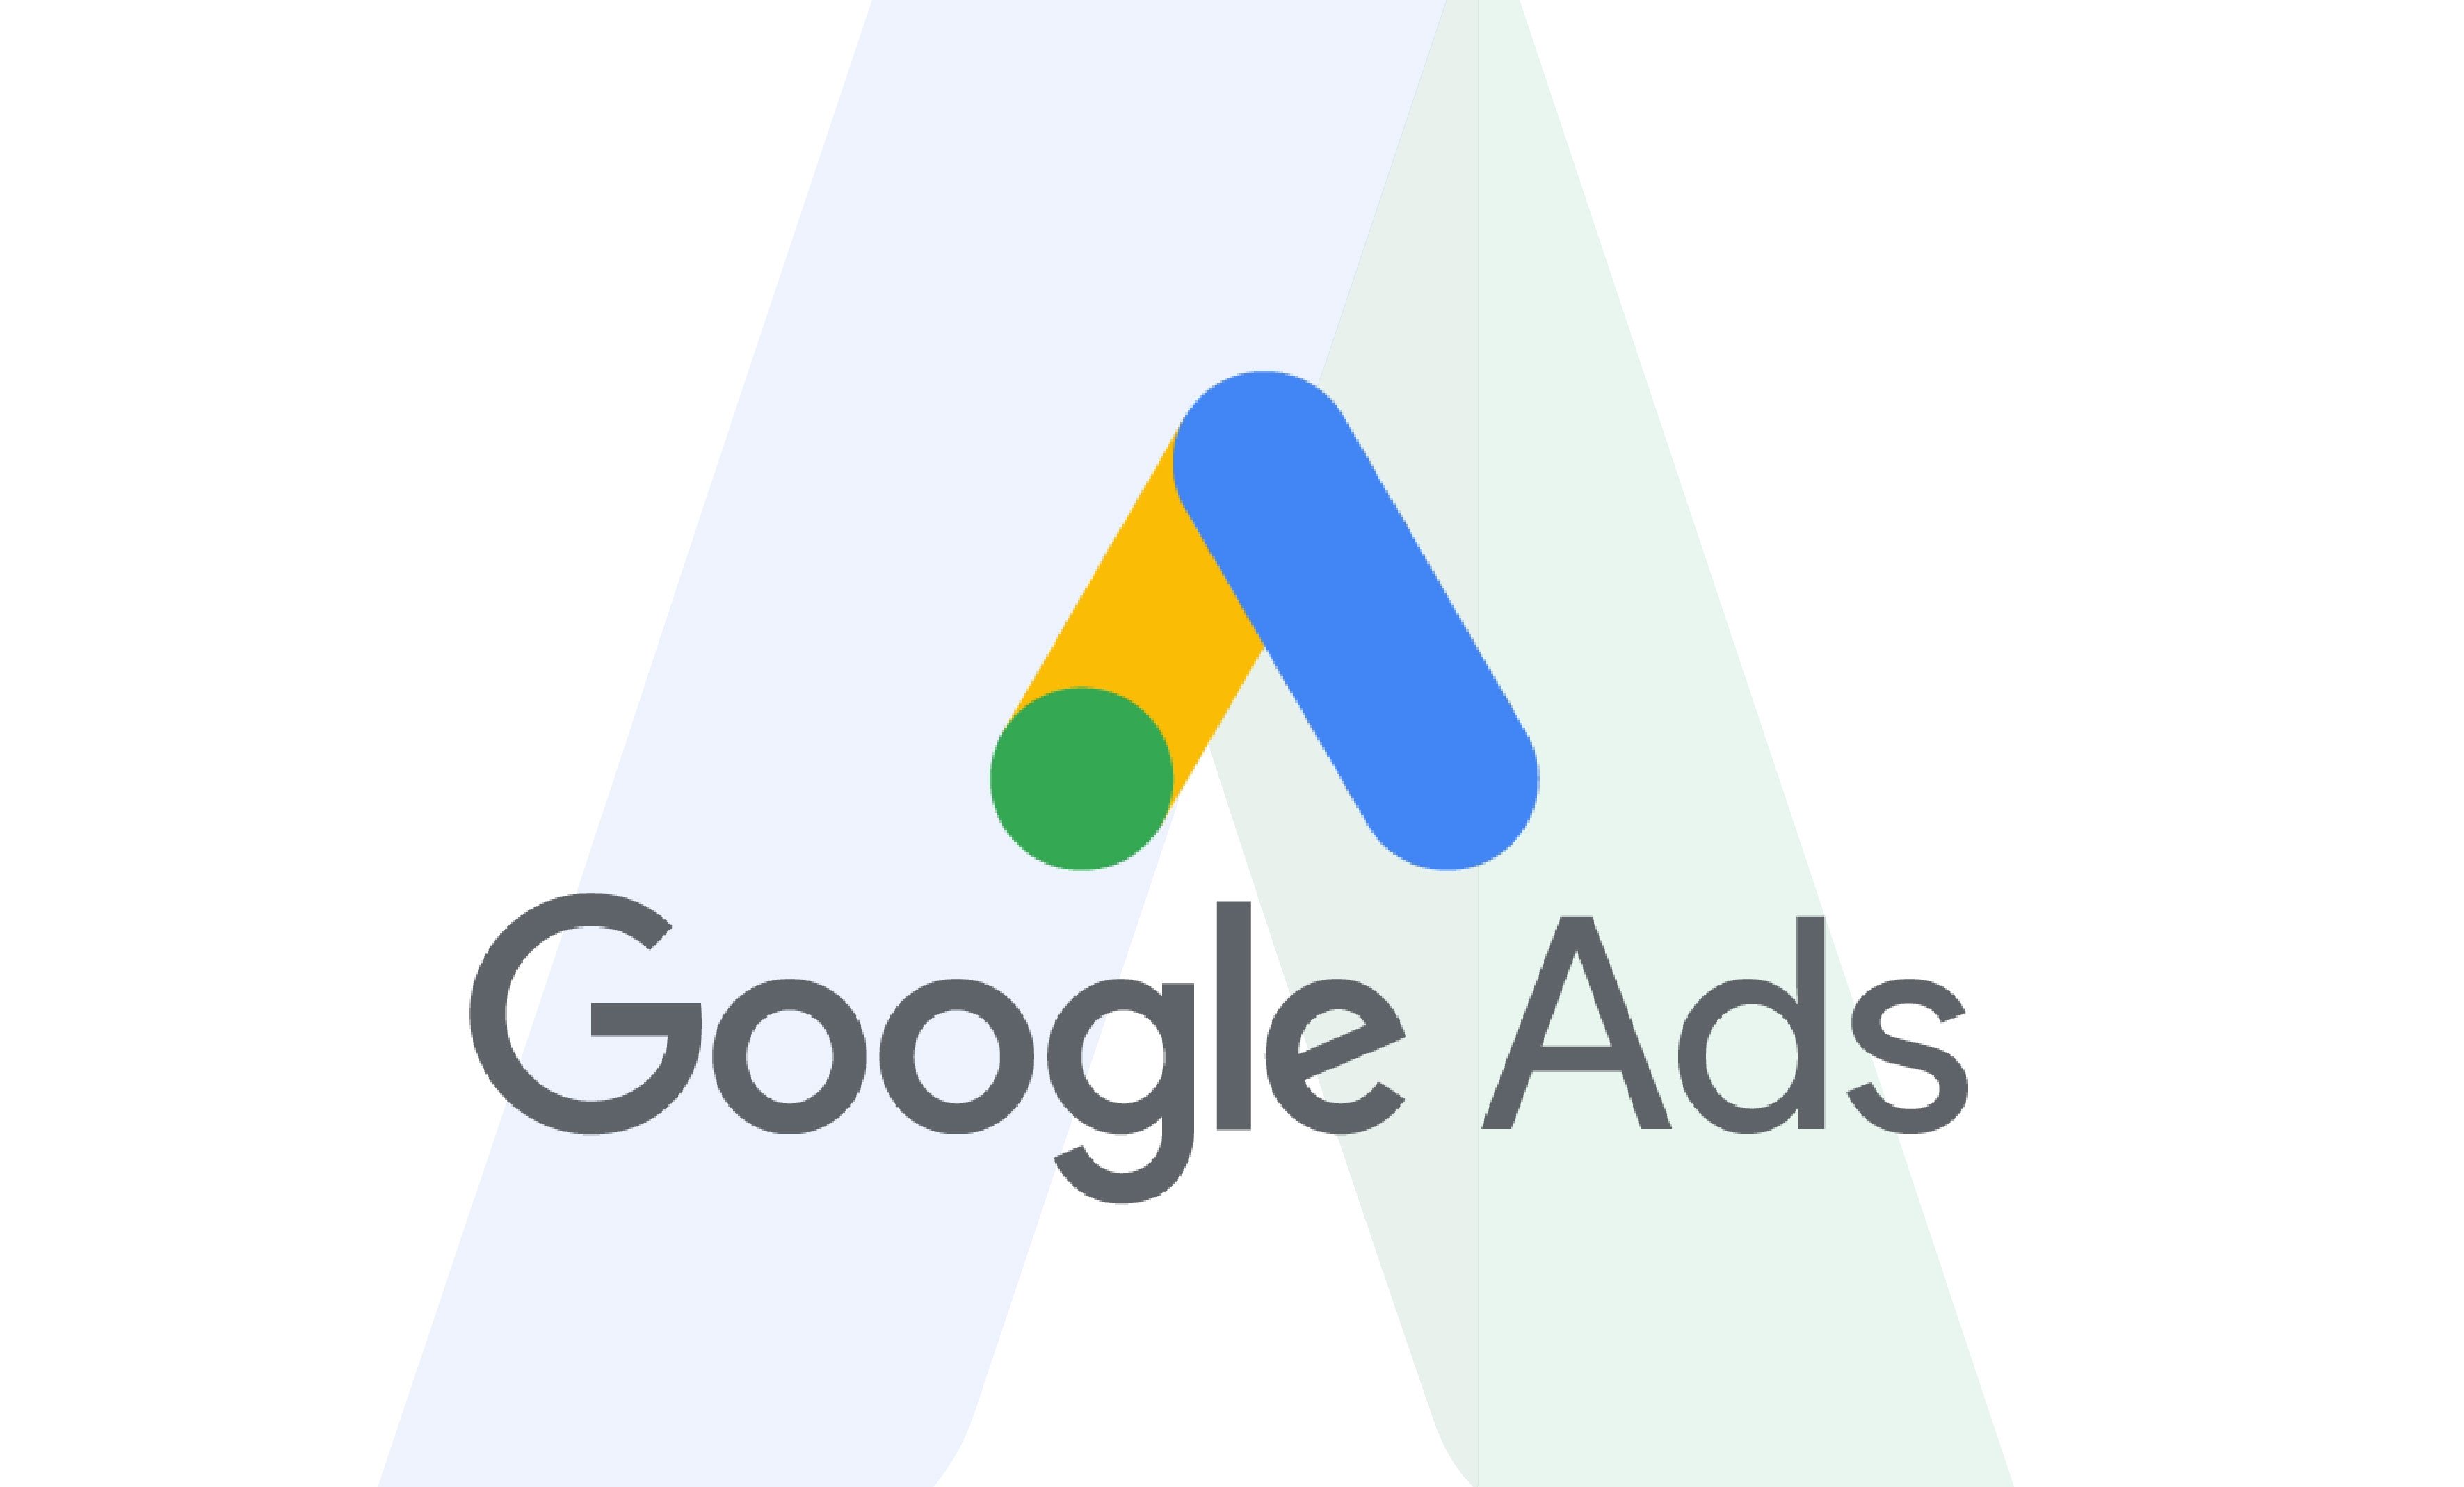 Google ads